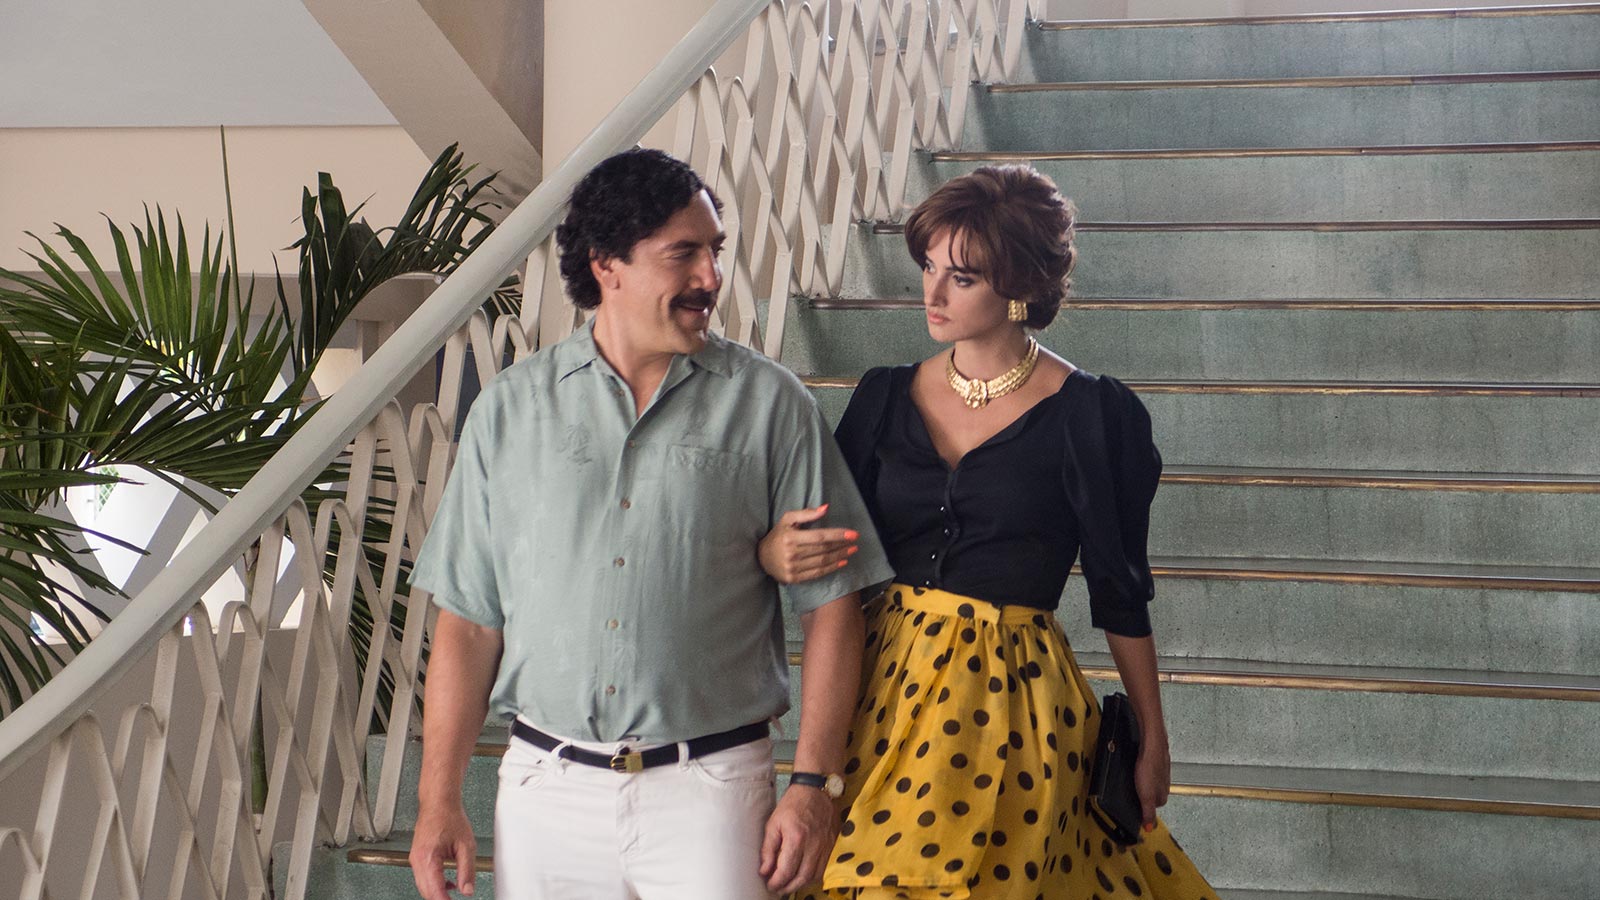 Em cena do filme Escobar - A Traição, Javier Bardem e Penélope Cruz - Foto: Divulgação/Filmax